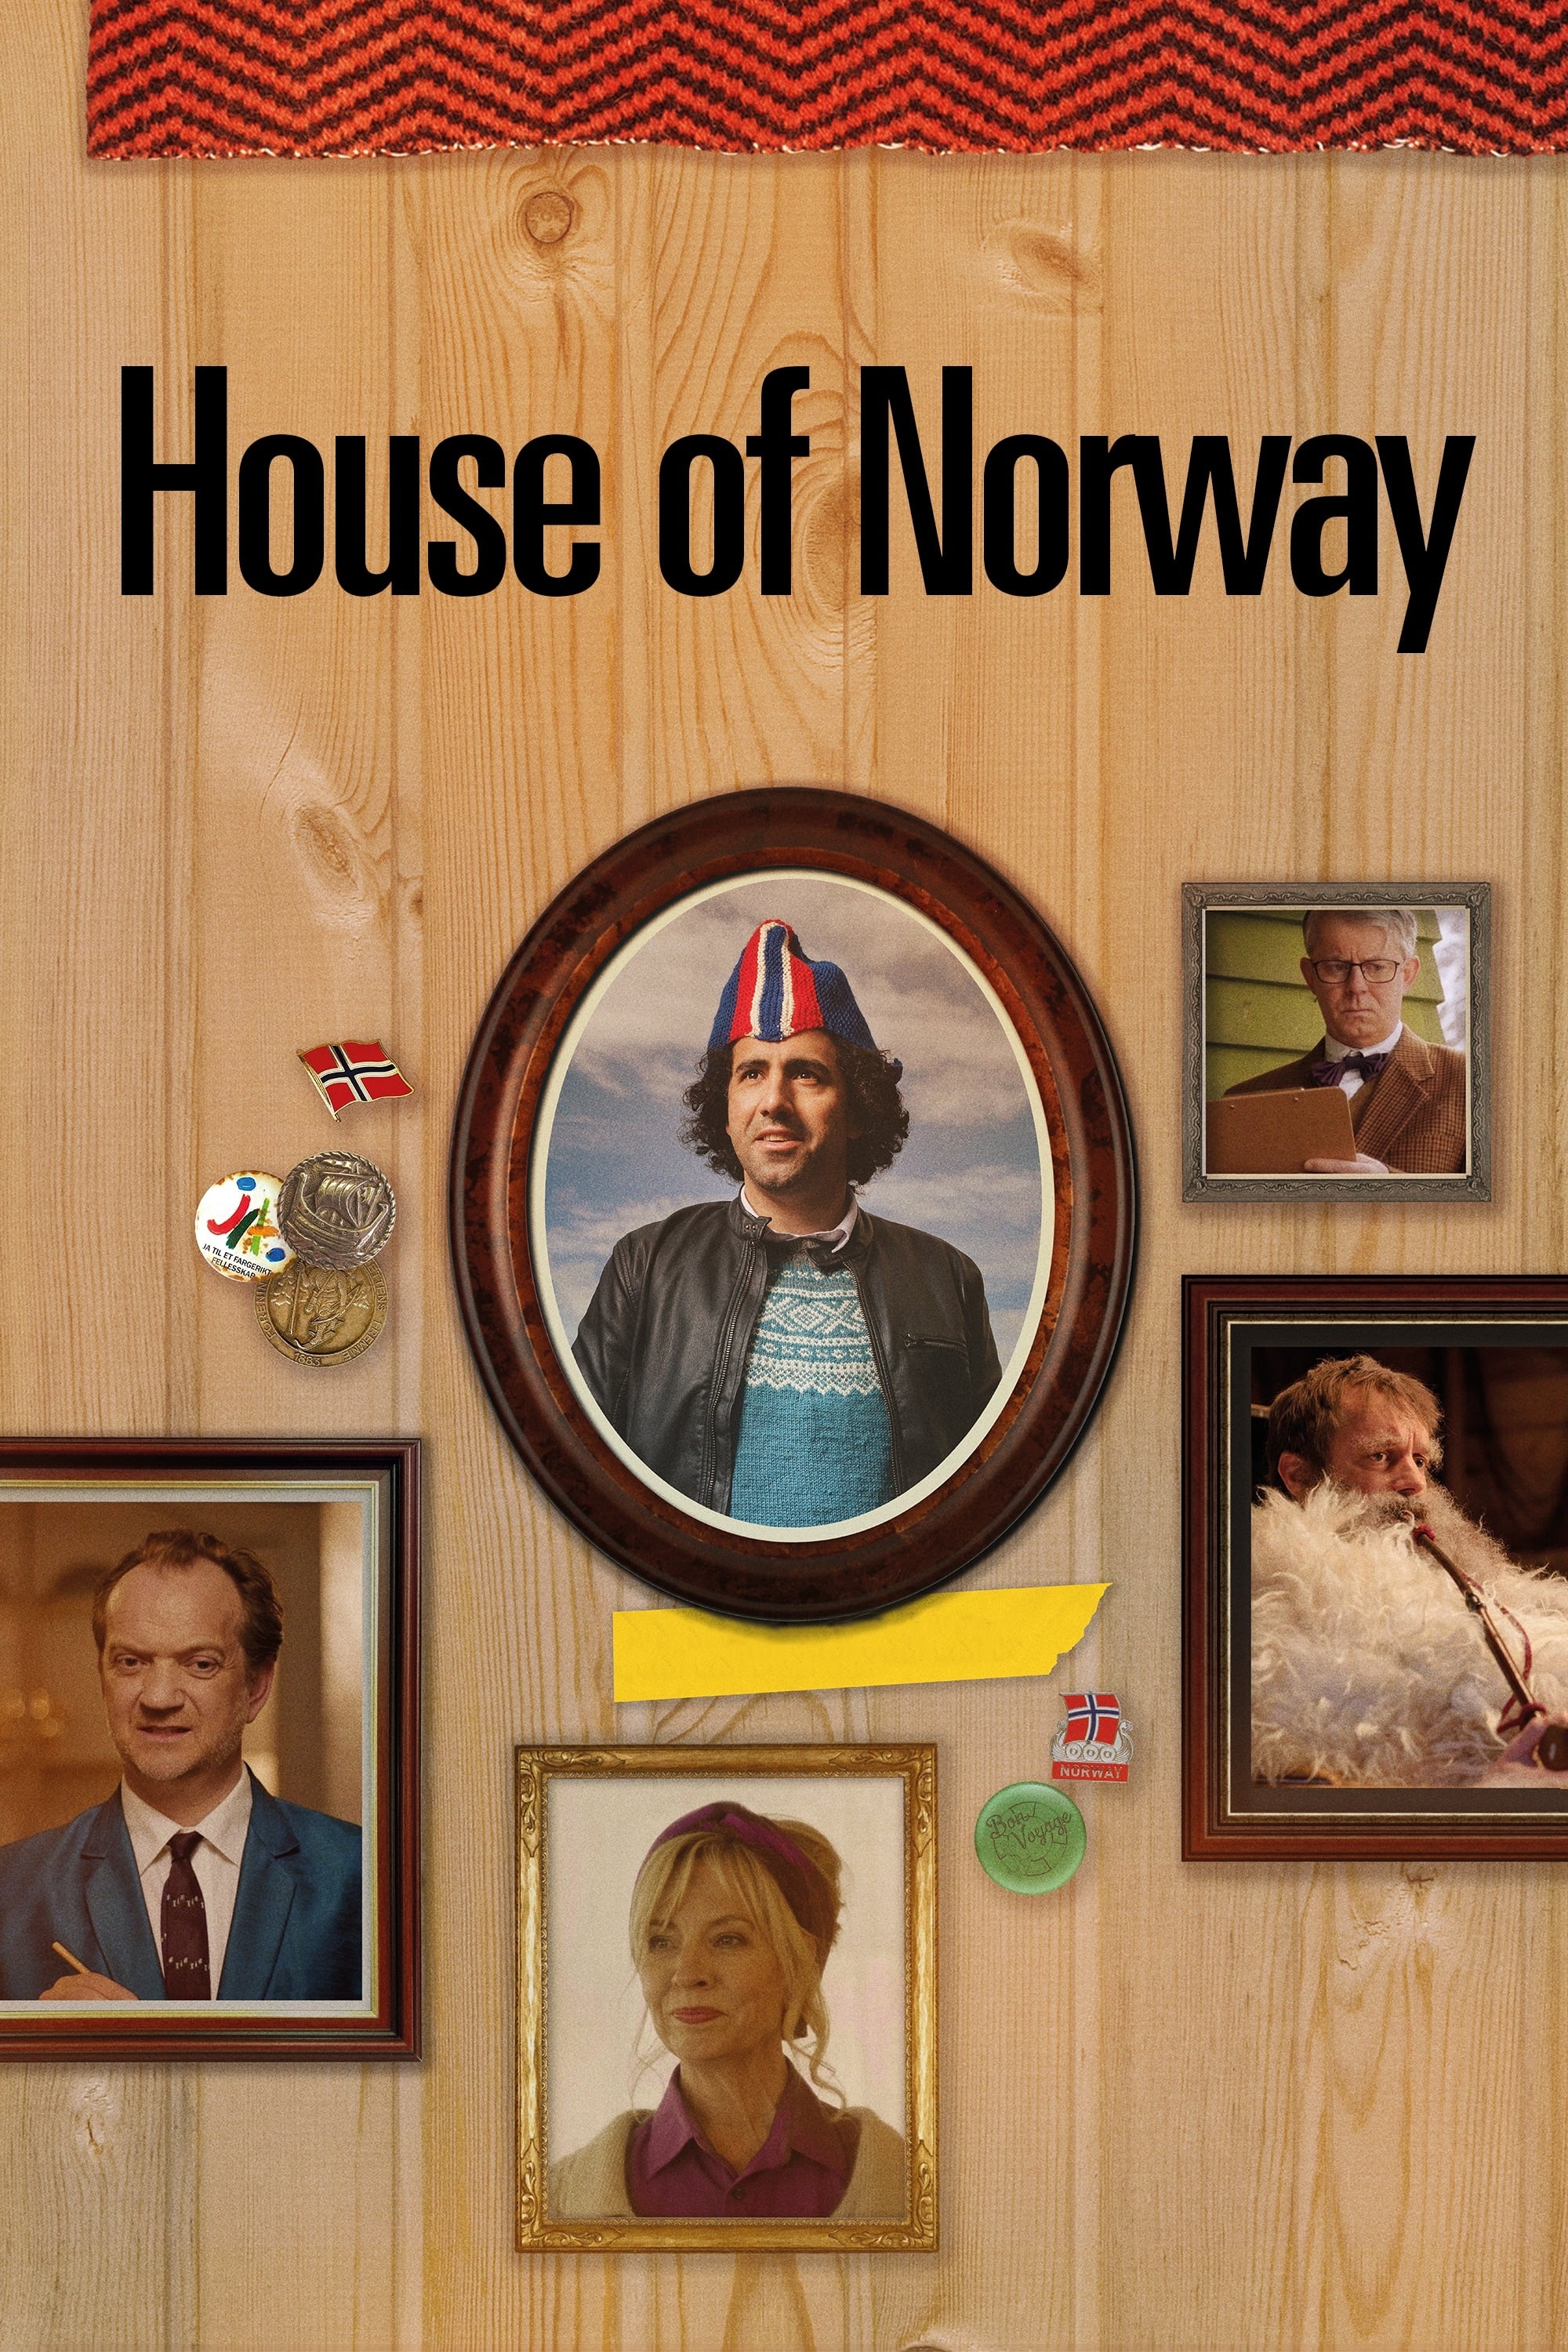 Caratula de Det norske hus (Det norske hus) 